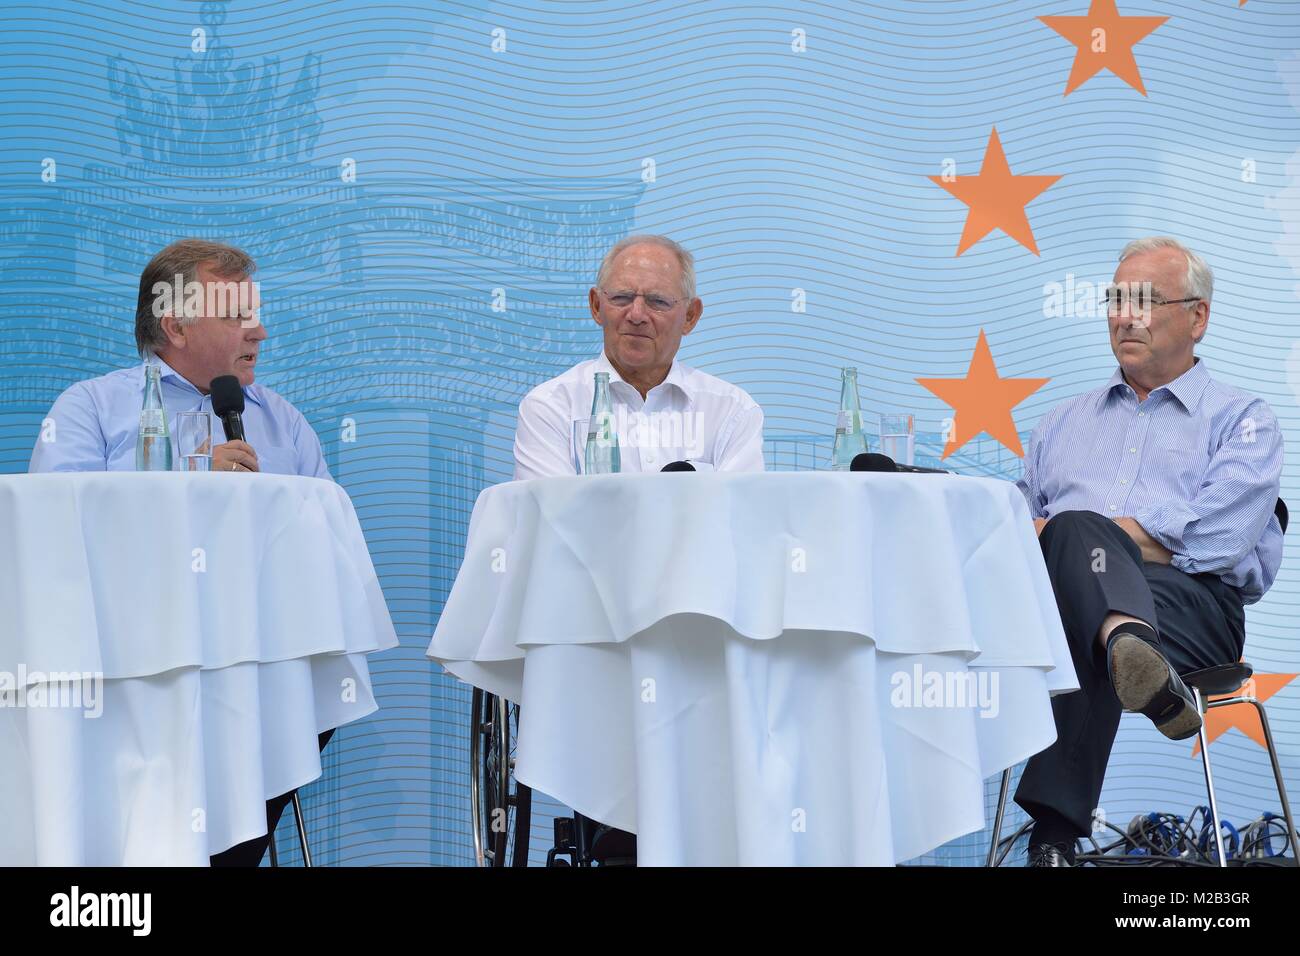 25 Jahre Freiheit und Einheit - Dr. Schäuble im Gespräch mit Dr. Theodor Waigel und Dr. Günther Krause zur Wende in Deutschland beim Tag der offenen Tür 2015. Stock Photo